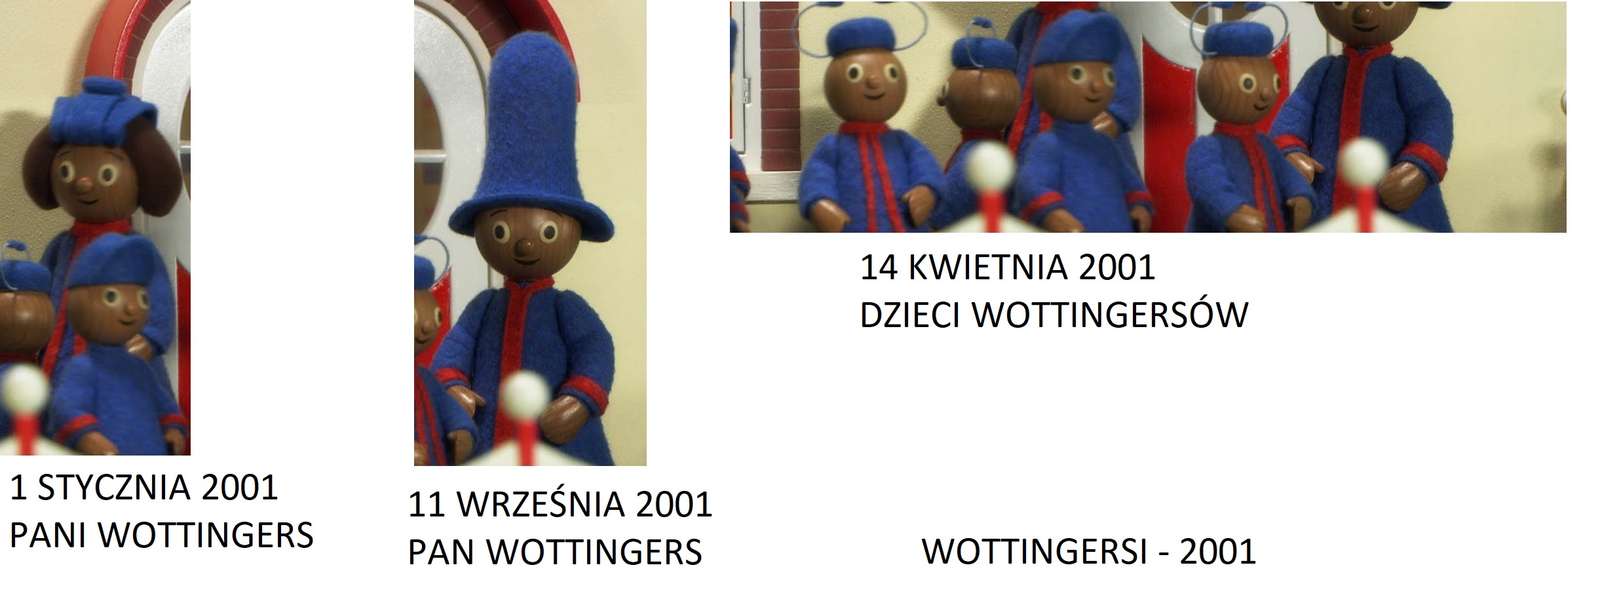 WOTTINGERS - 2001 puzzle online a partir de fotografia